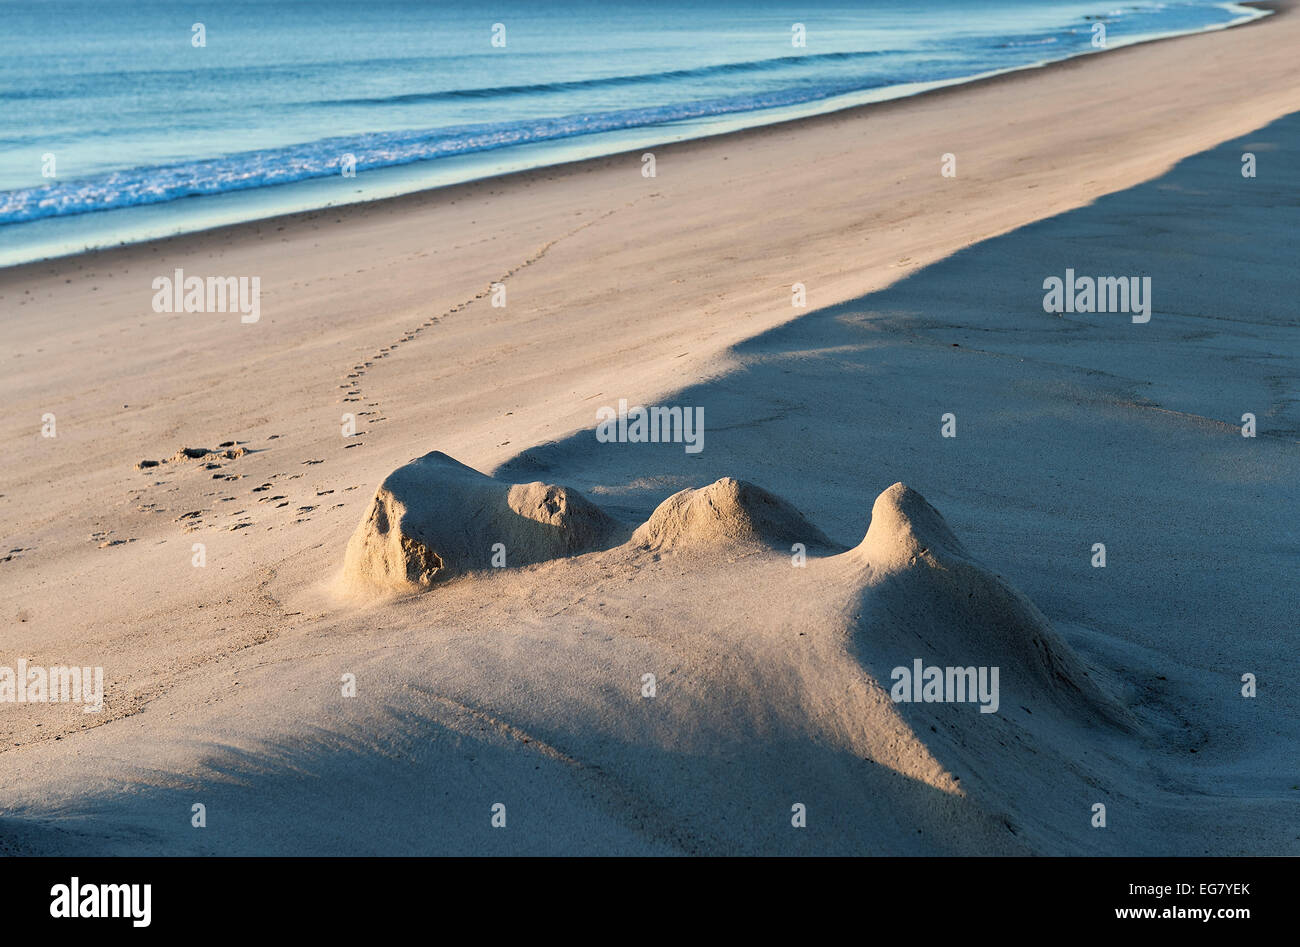 Los vestigios de un castillo de arena en la playa de Nauset, en Cape Cod, Massachusetts, EE.UU. Foto de stock